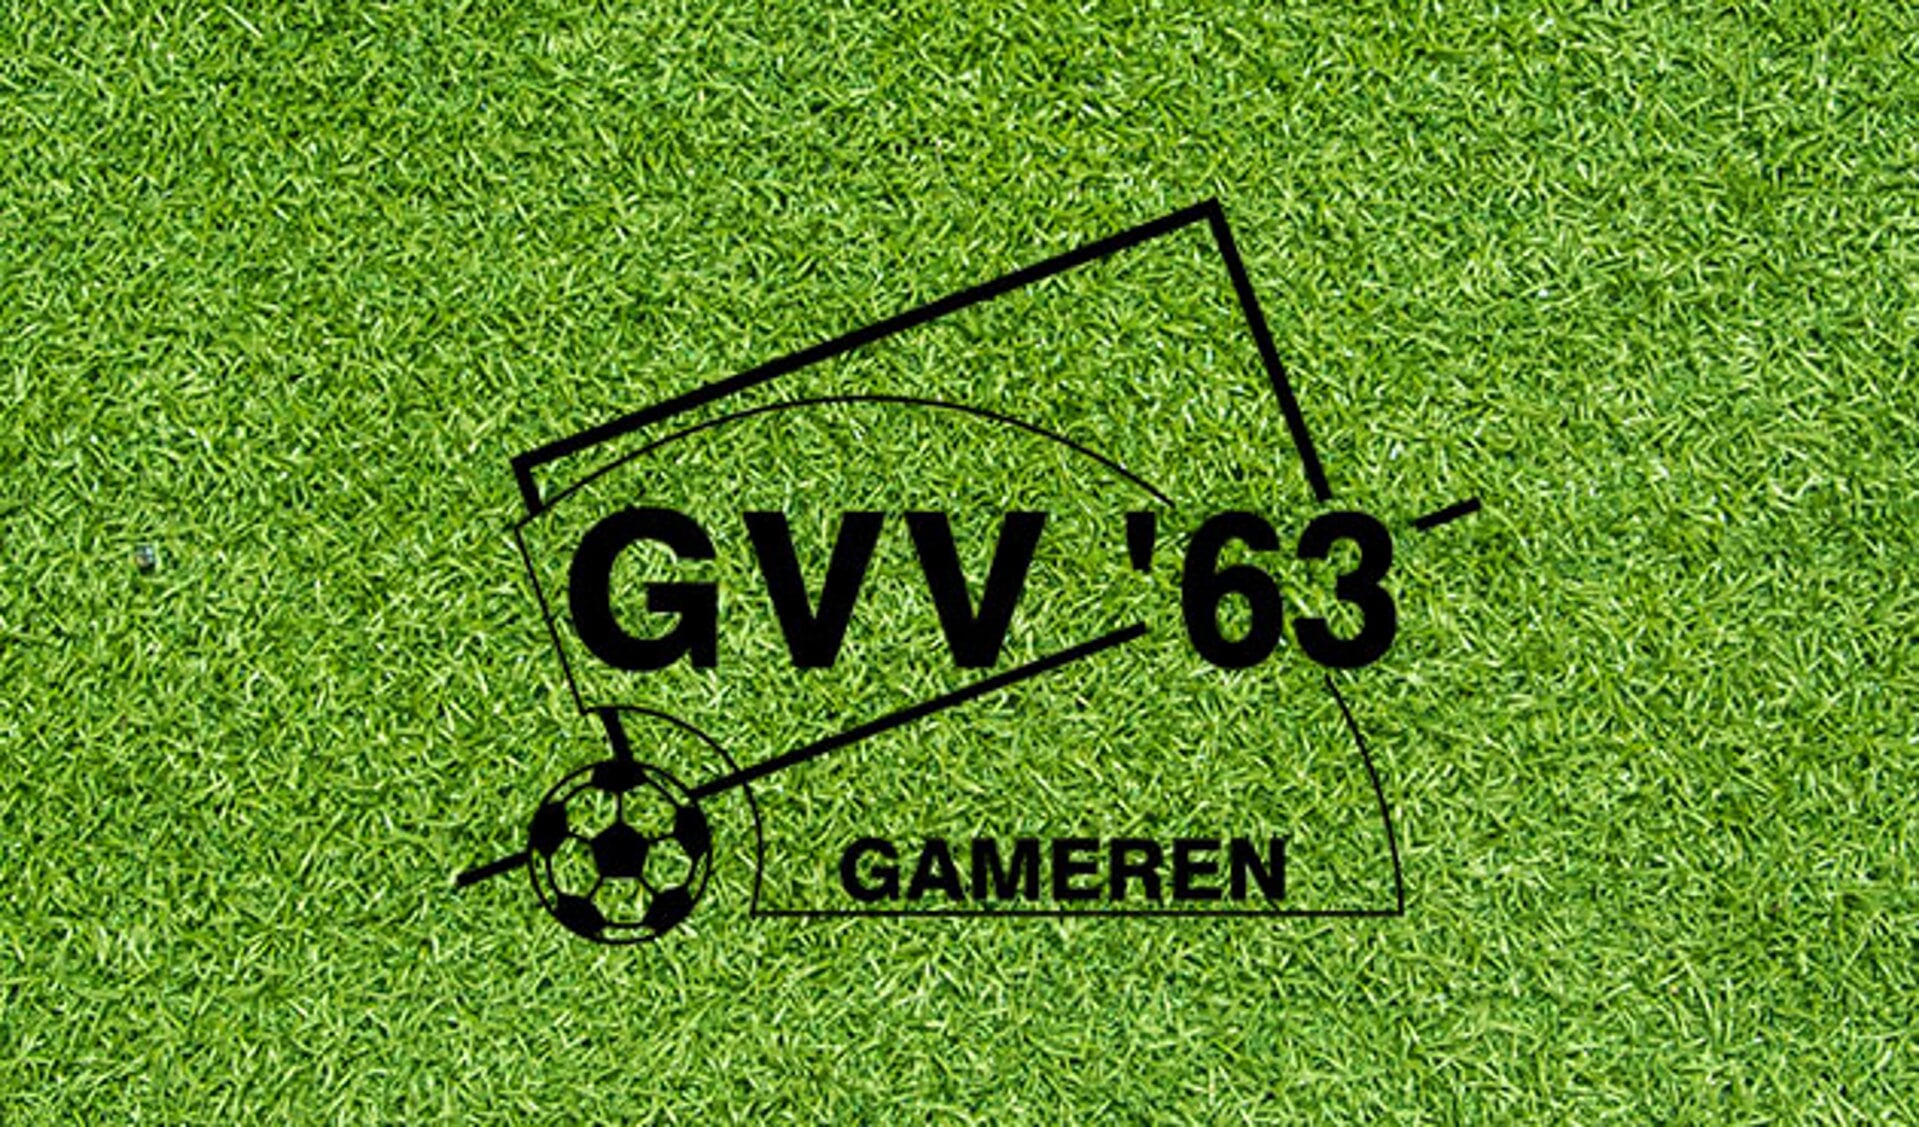 Gemankeerd GVV’63 verliest bij hekkensluiter